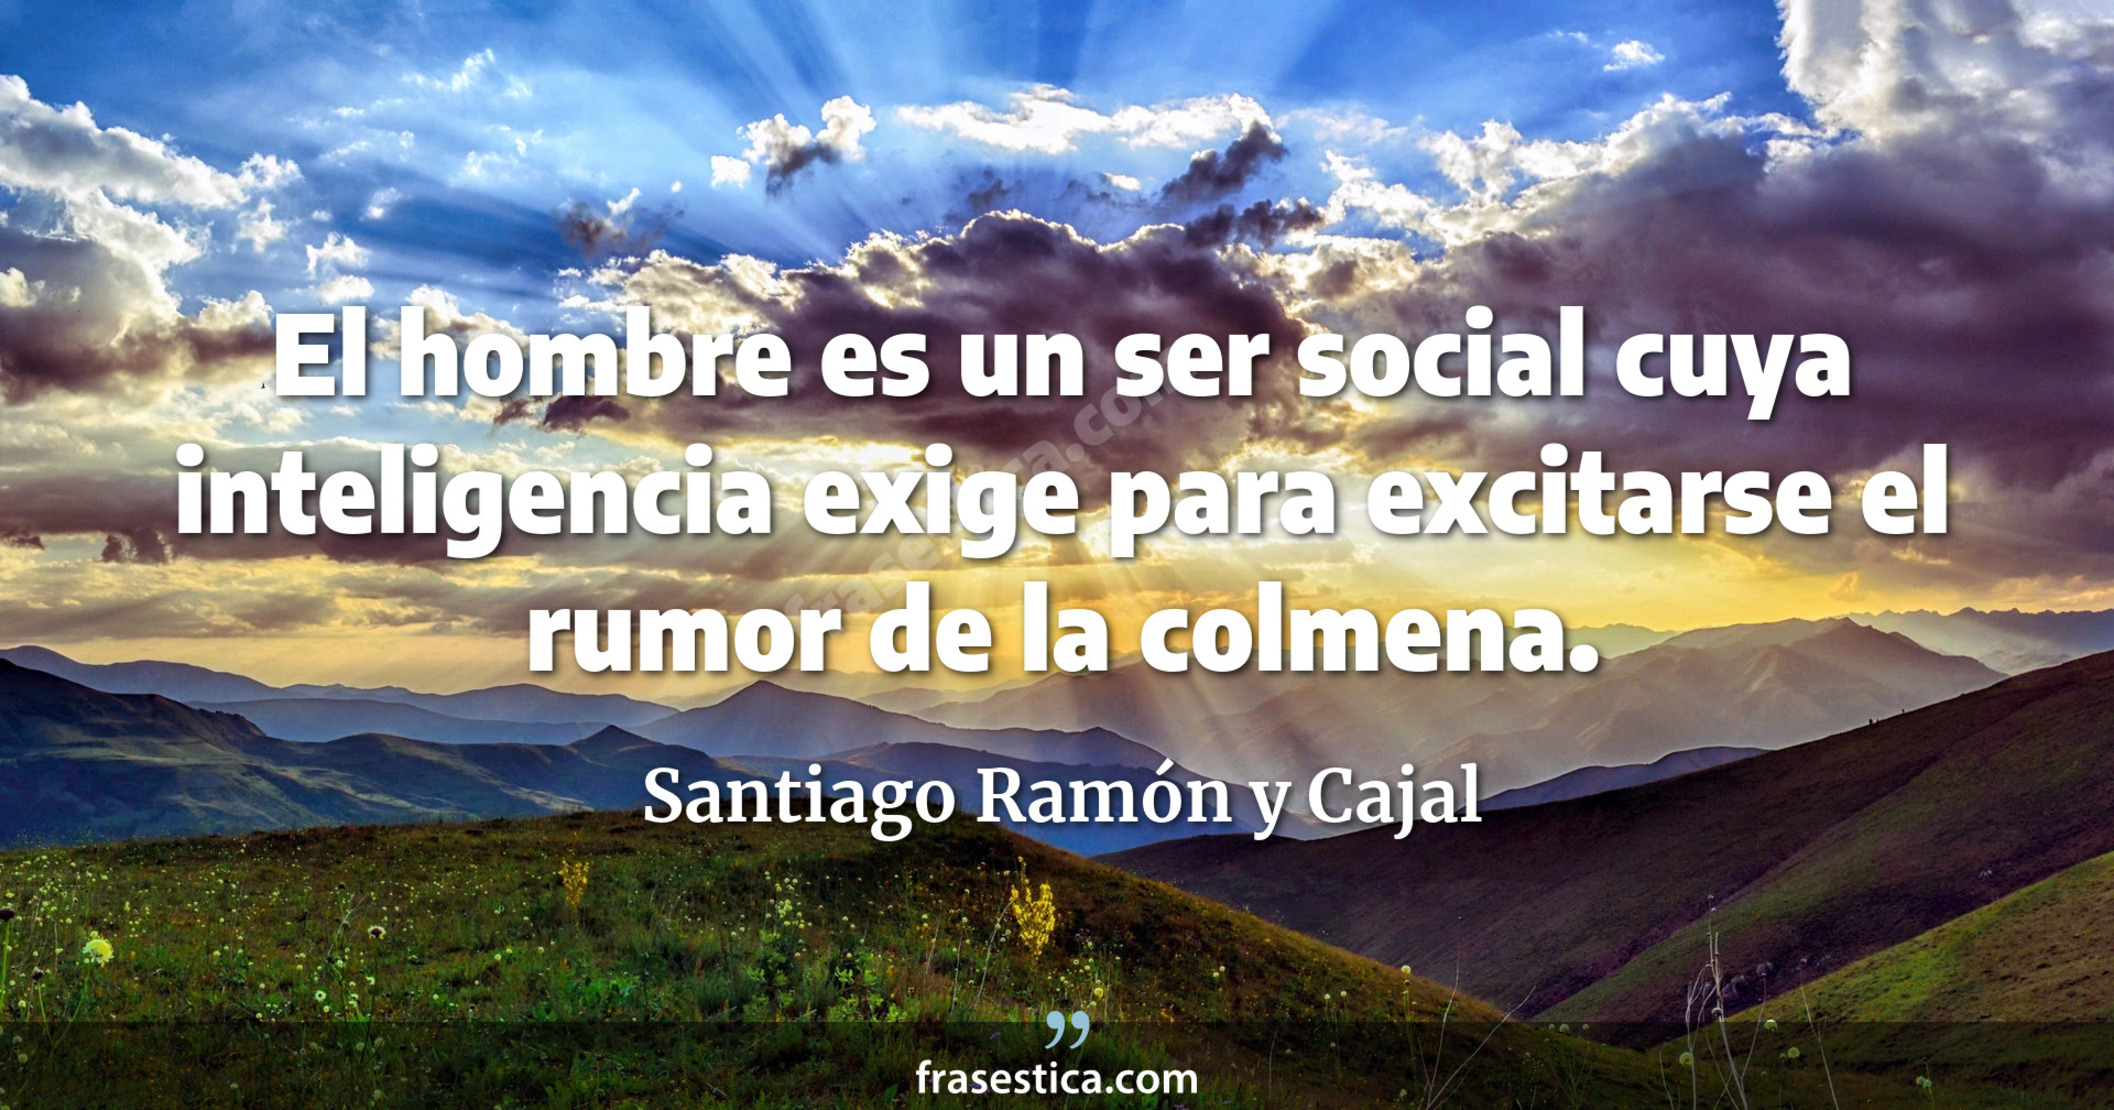 El hombre es un ser social cuya inteligencia exige para excitarse el rumor de la colmena. - Santiago Ramón y Cajal